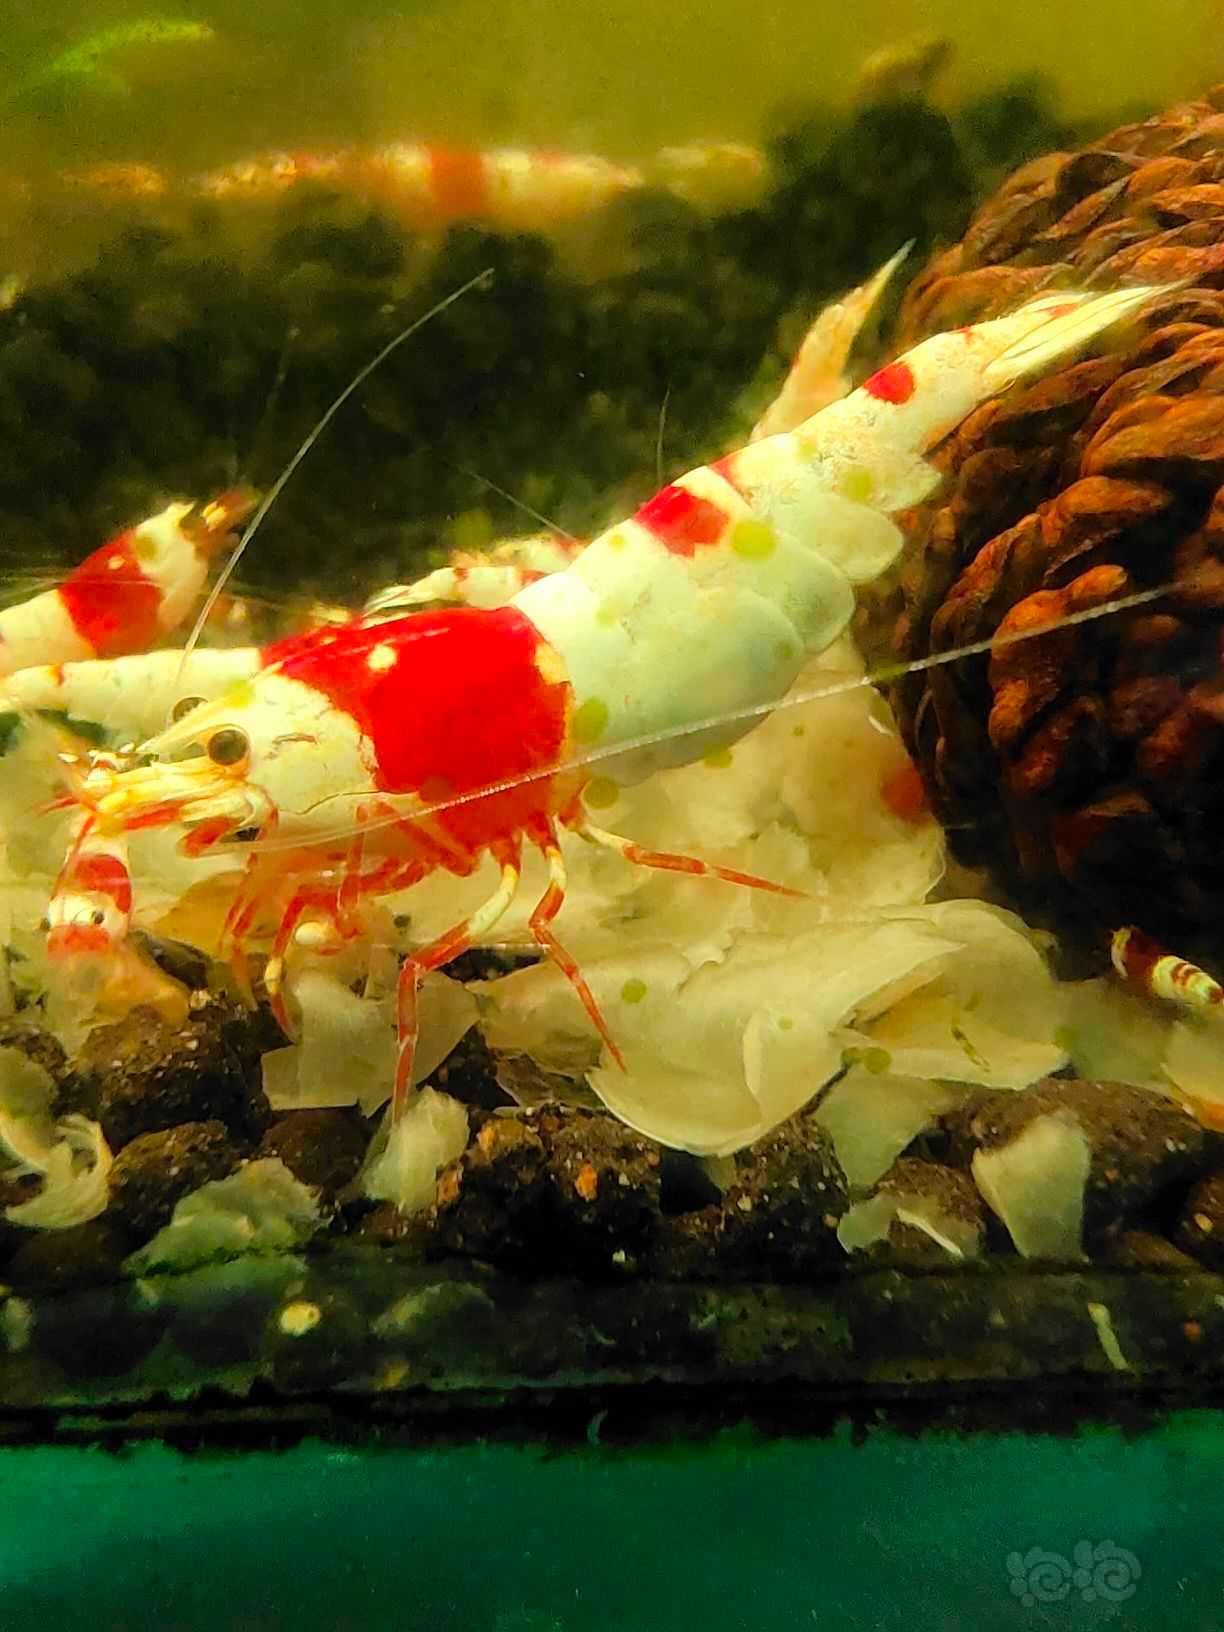 【水晶虾】水晶虾-图1